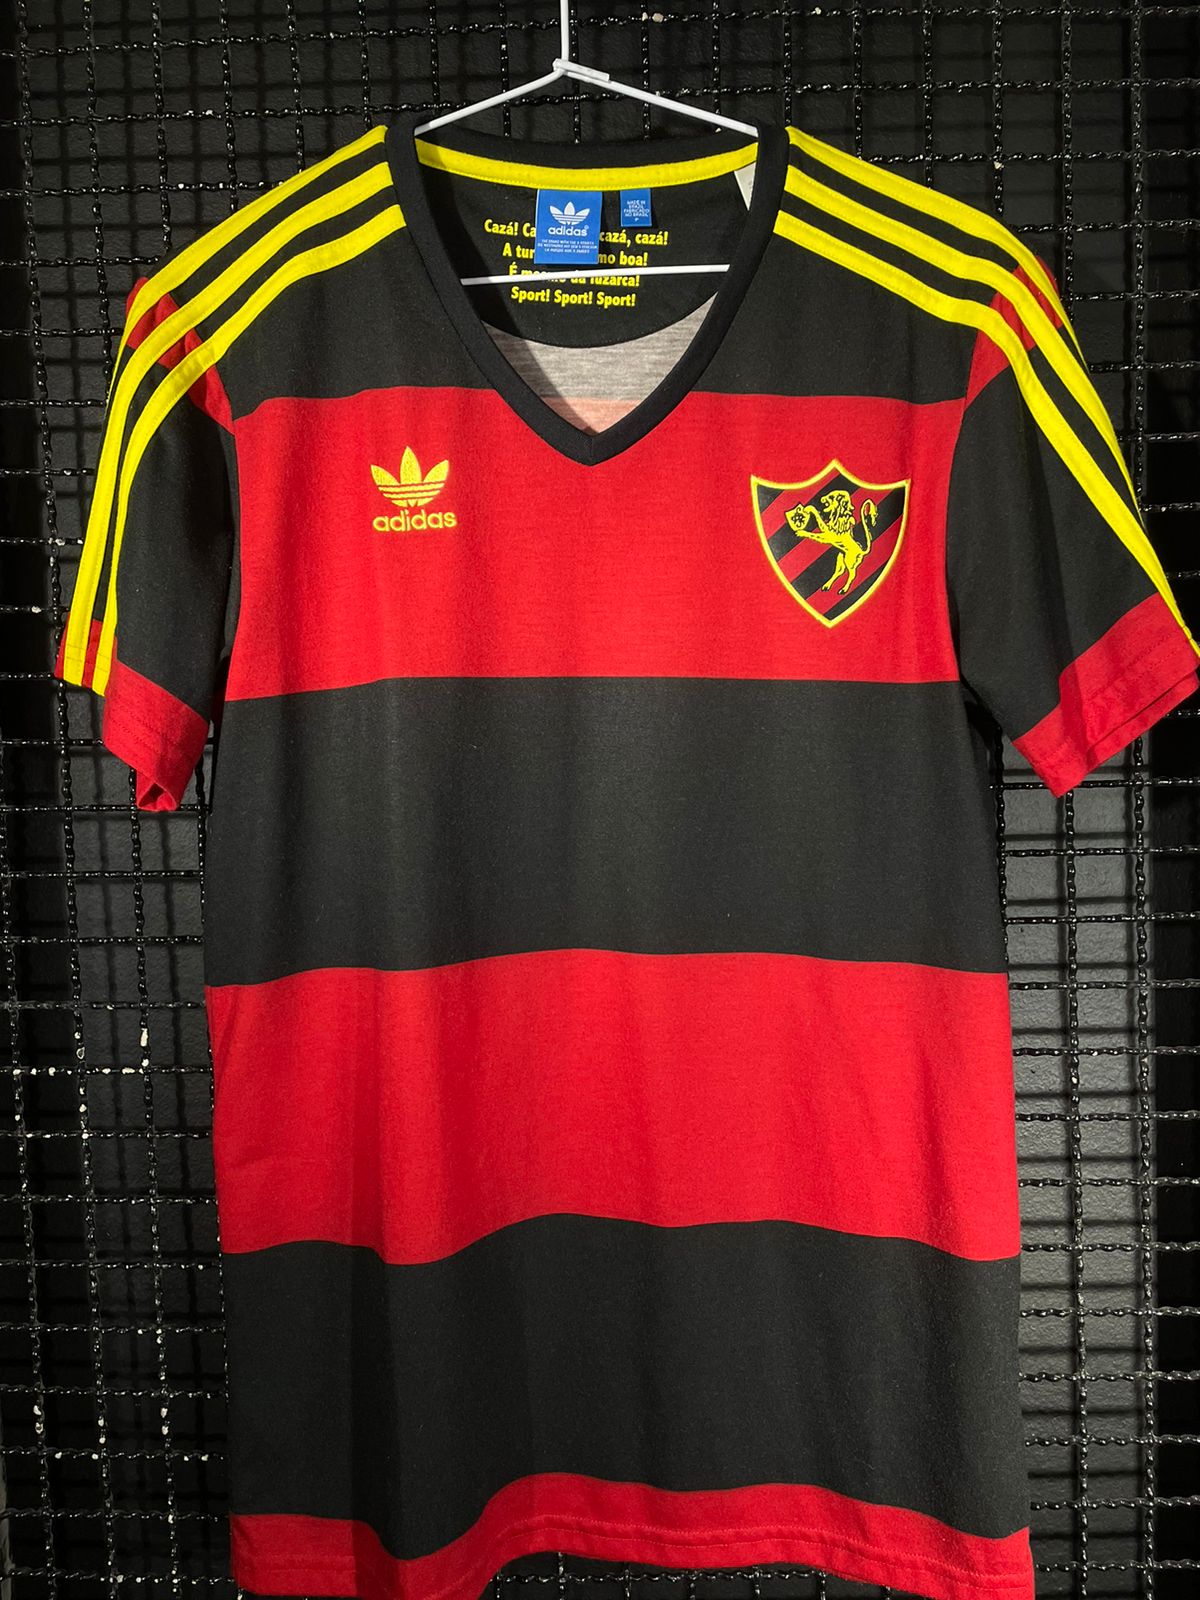 Camisa Sport Recife Adidas Originals 110 anos comemorativa